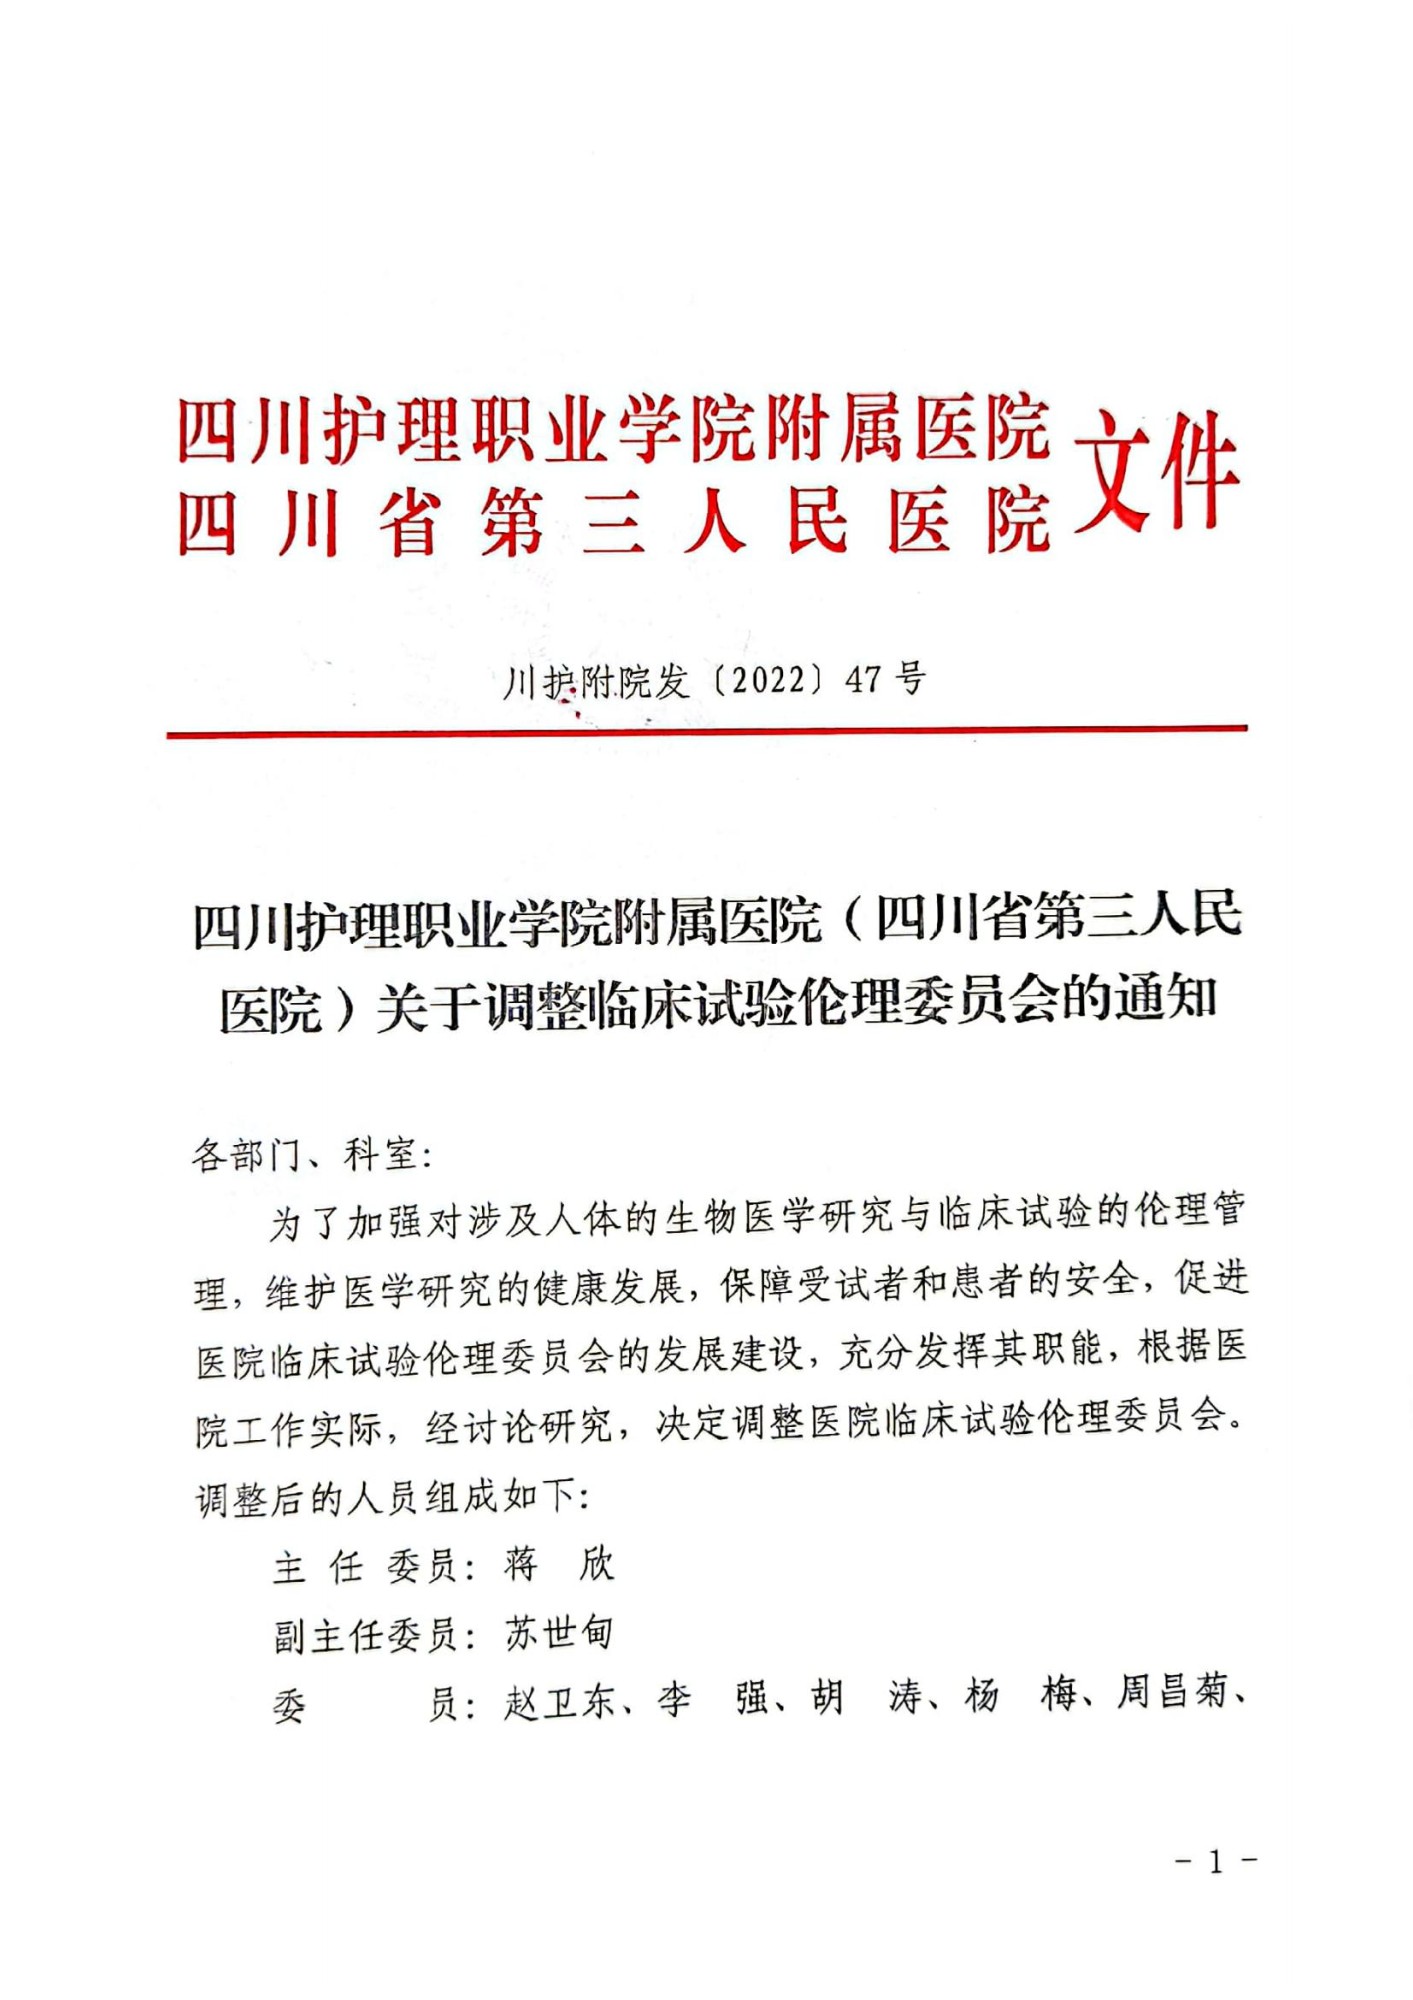 四川护理职业学院附属医院（四川省第三人民医院）关于调整临床试验伦理委员会的通知